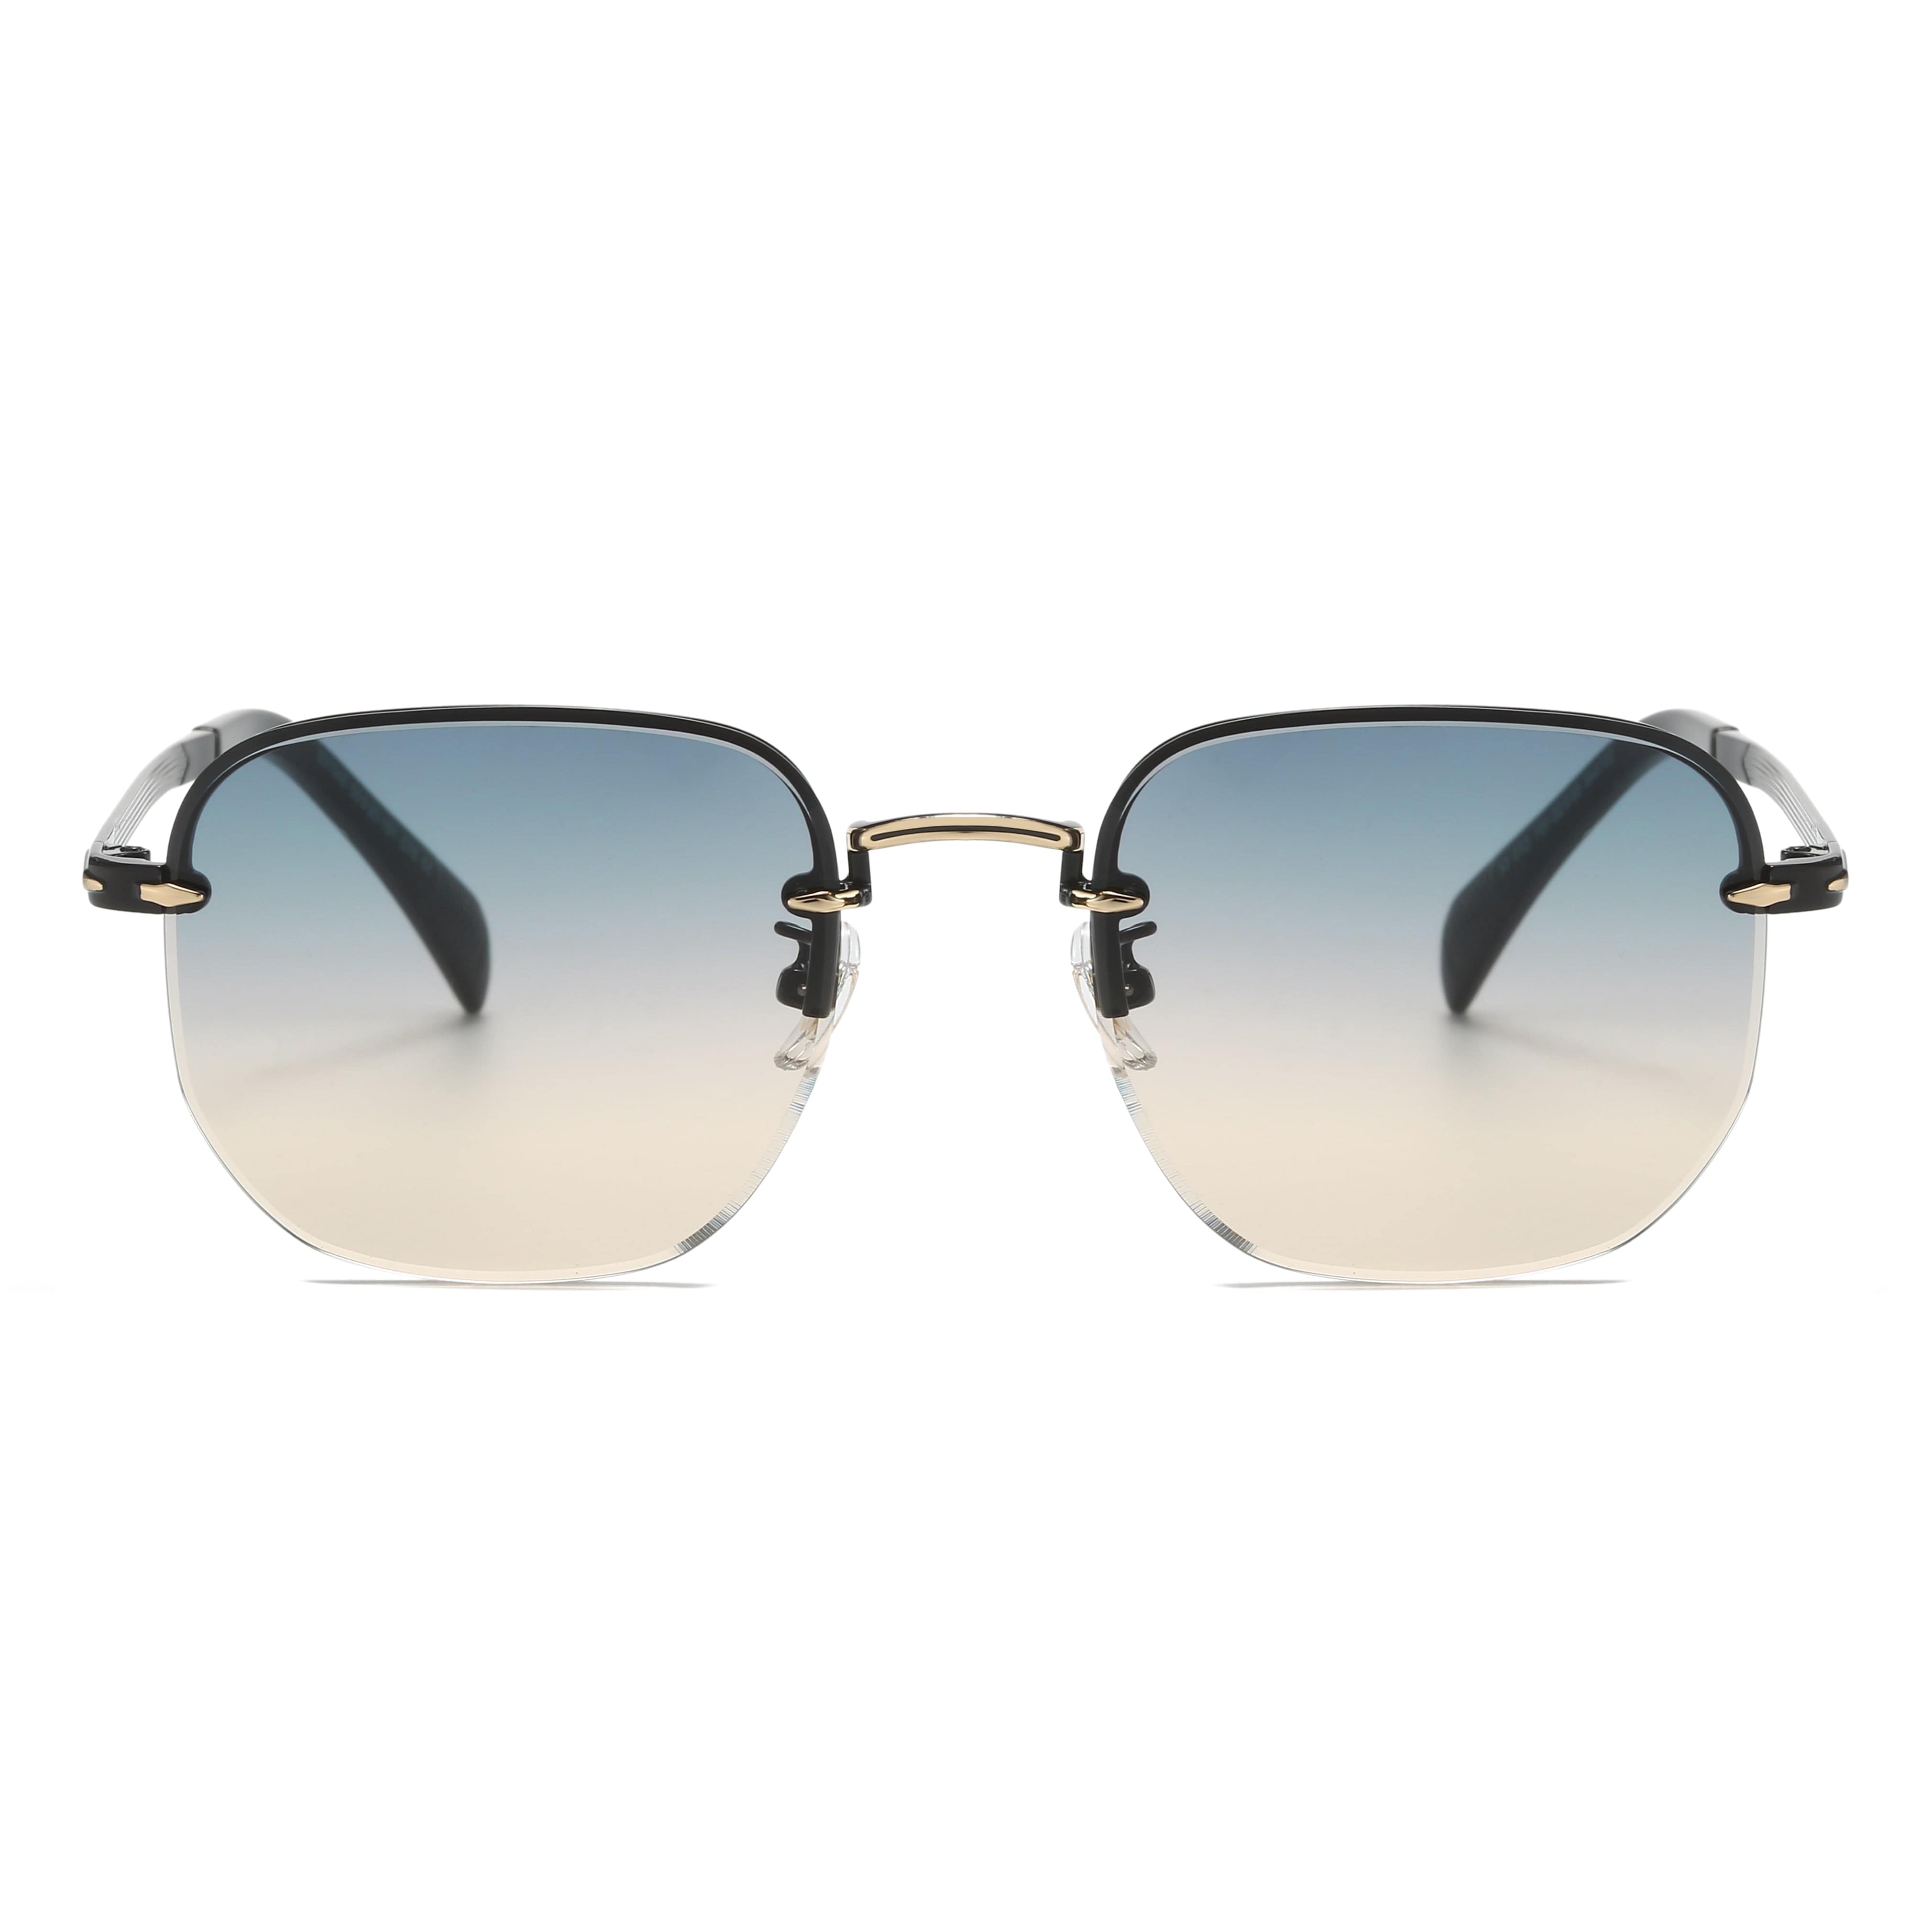 GIUSTIZIERI VECCHI Sunglasses Small / Regent Grey LavishLuster Duo